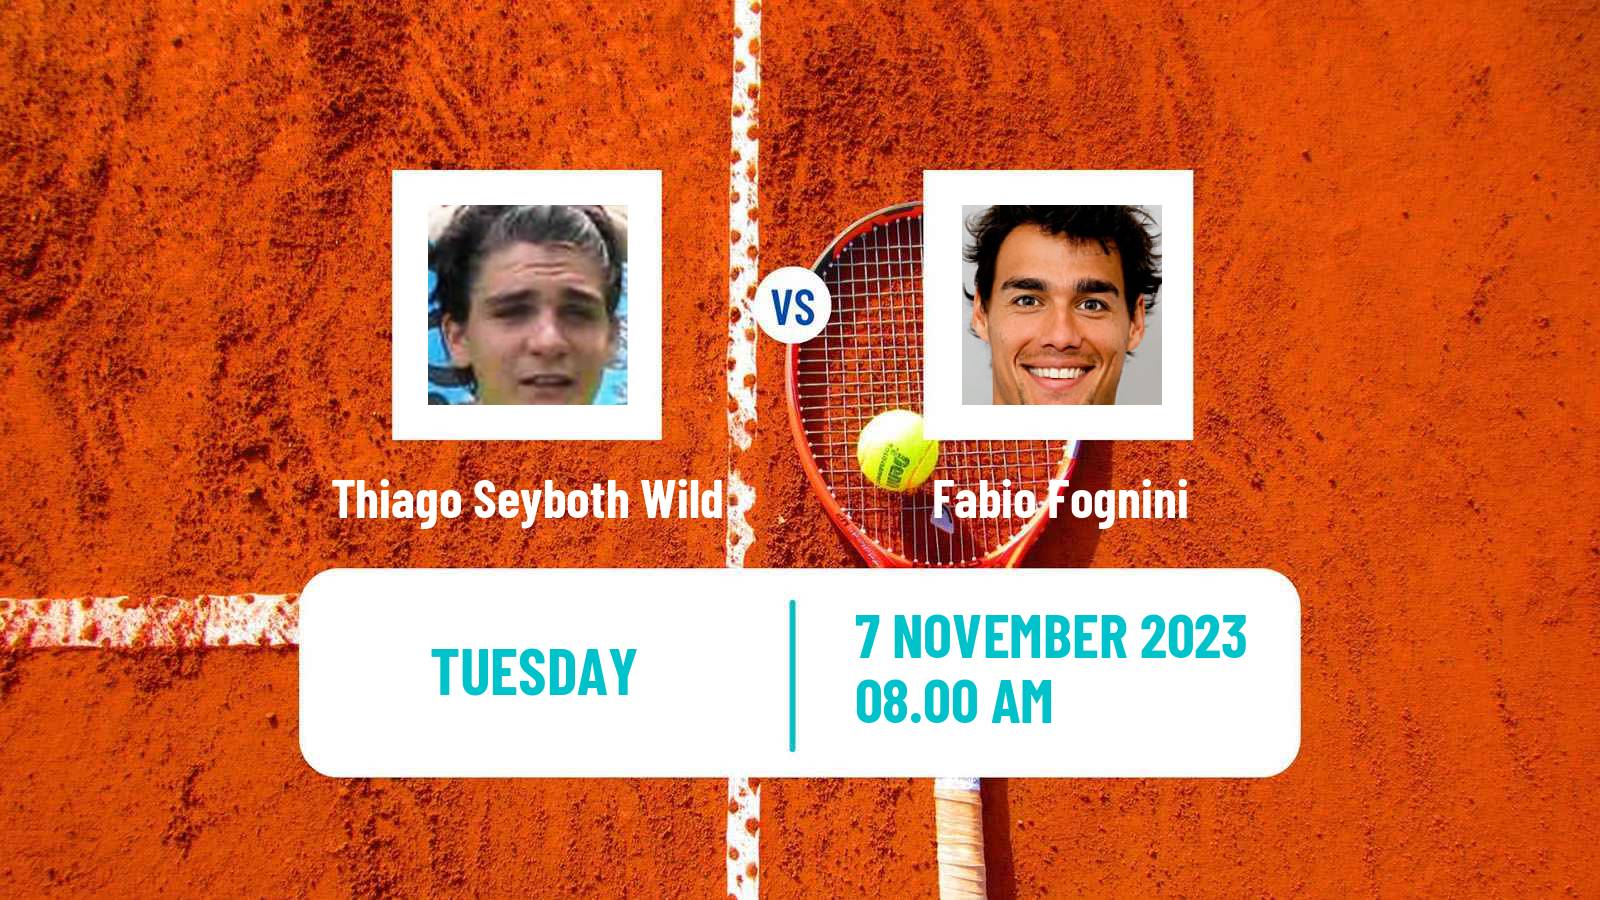 Tennis ATP Metz Thiago Seyboth Wild - Fabio Fognini